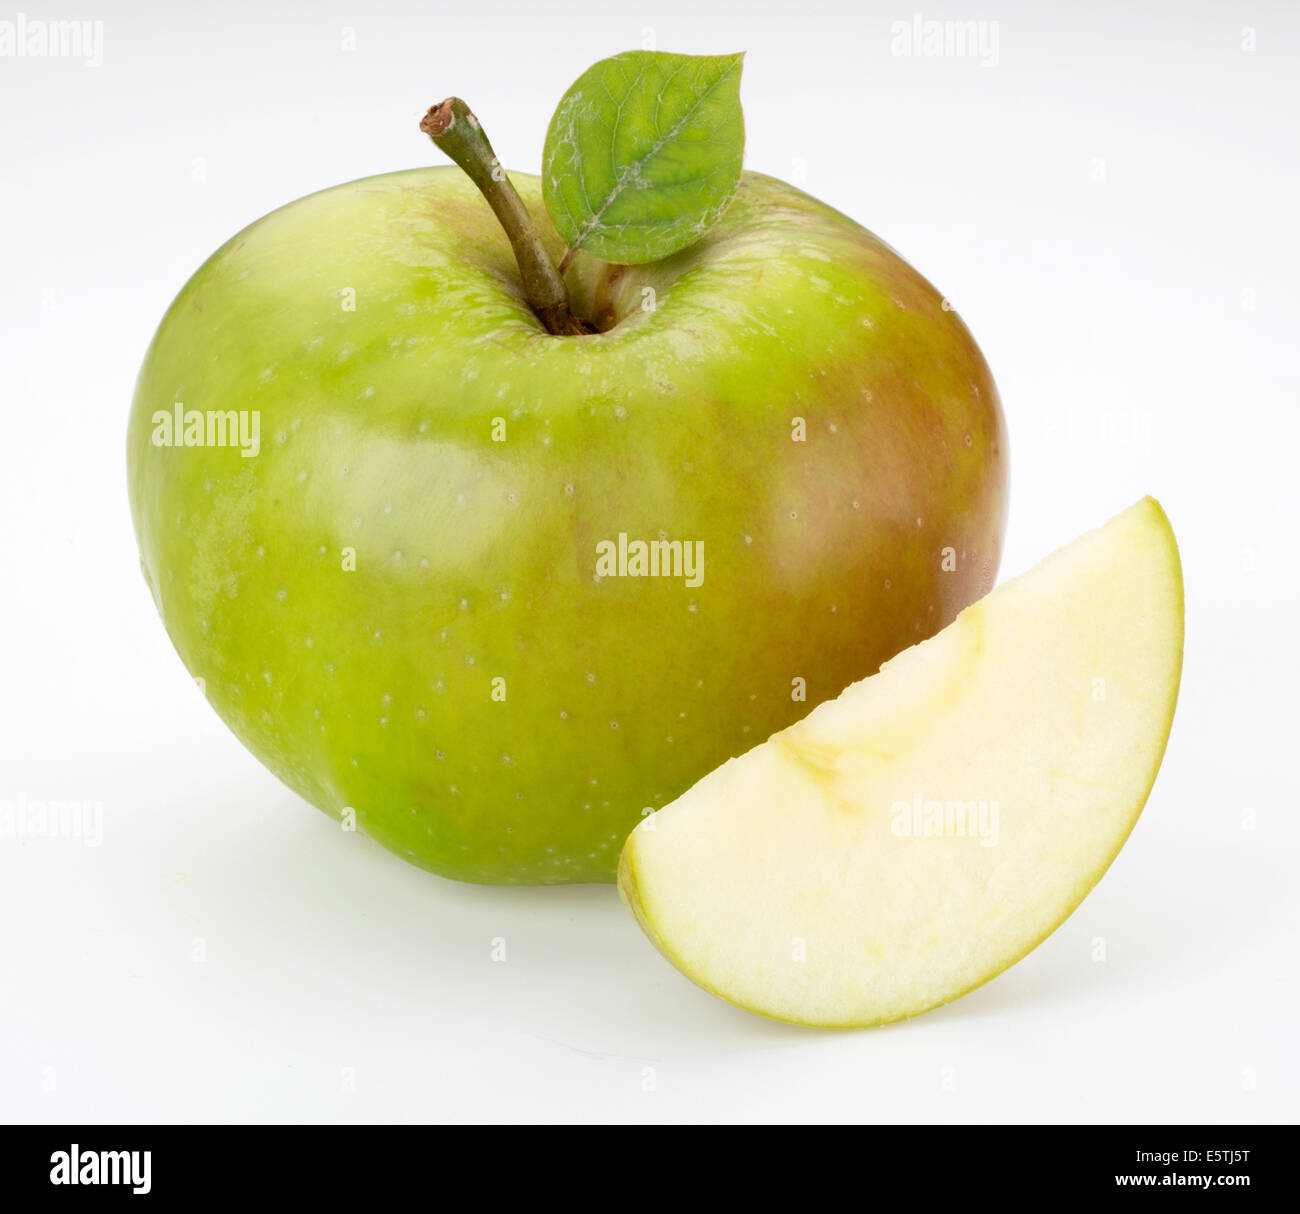 Tagliare la mela immagini e fotografie stock ad alta risoluzione - Alamy